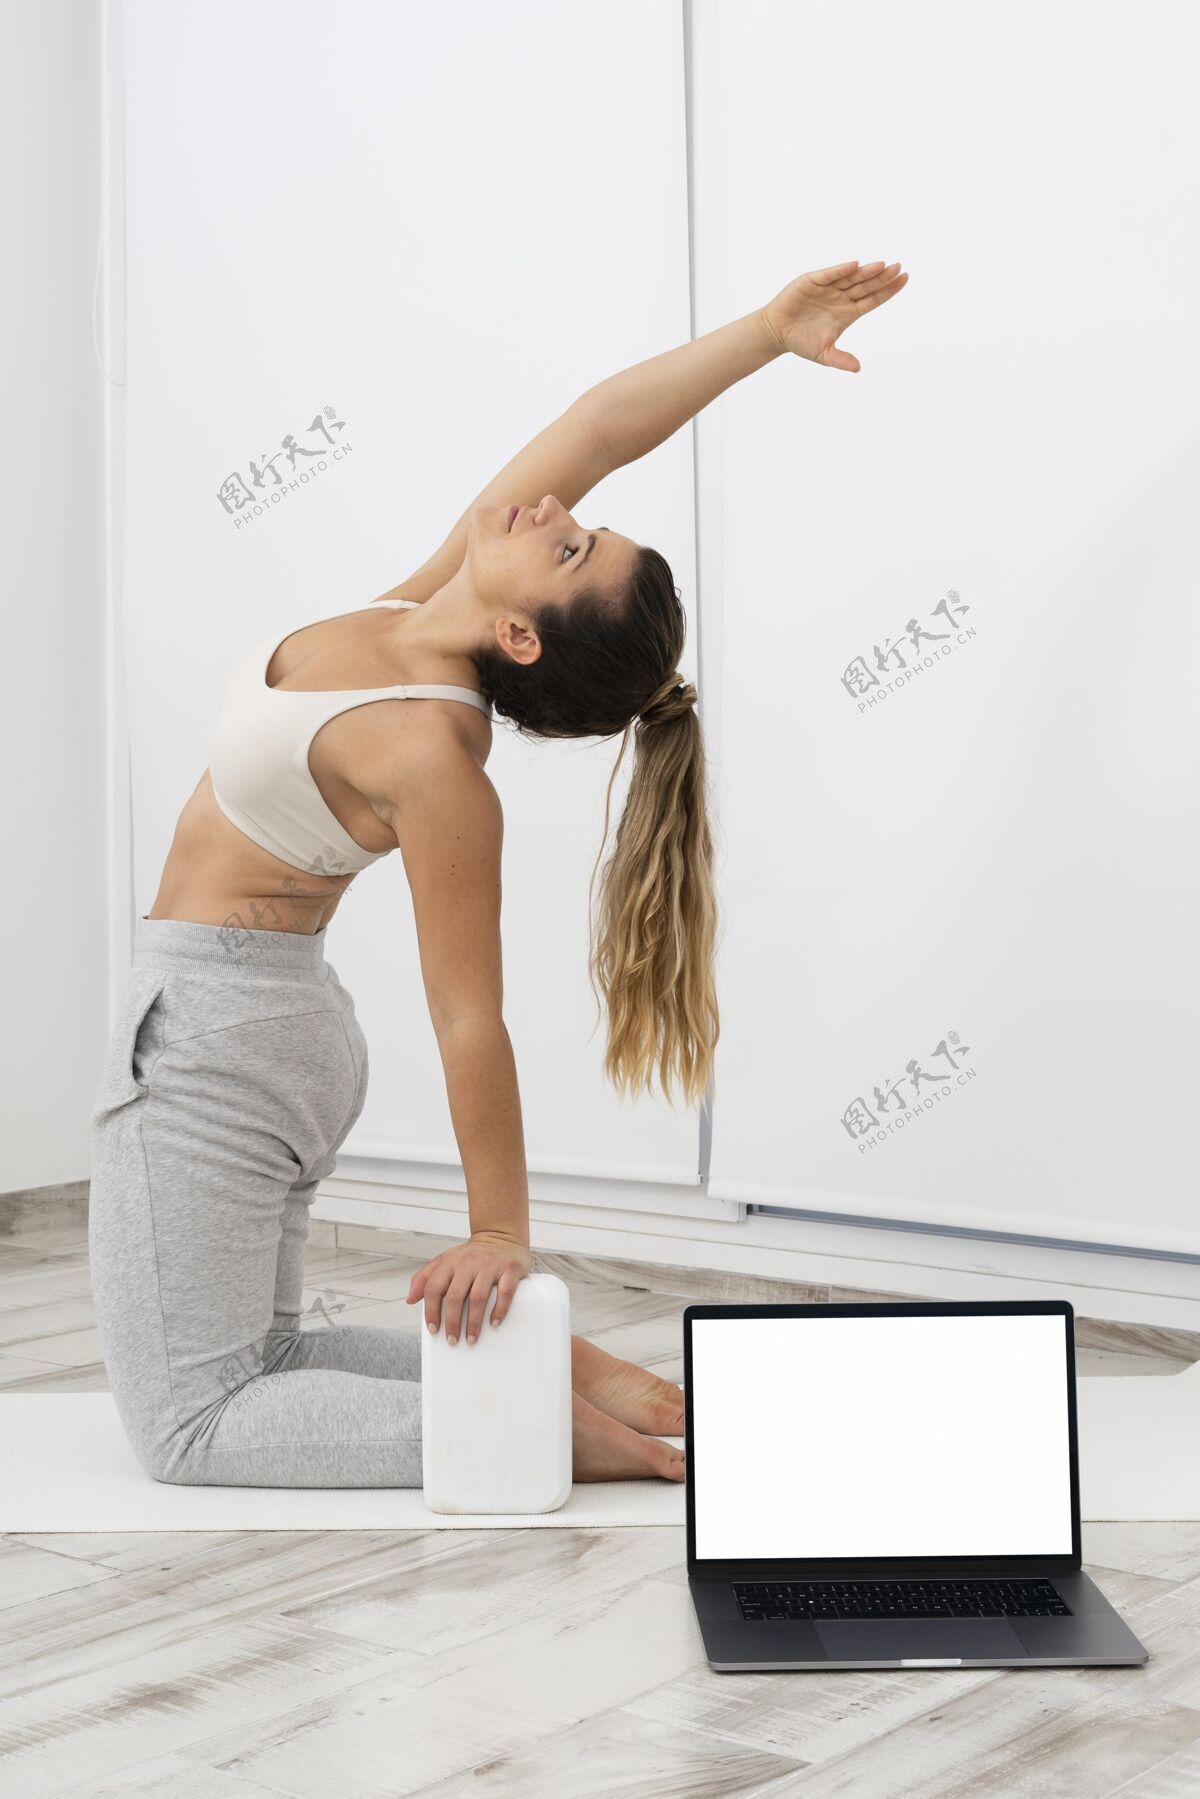 放松运动型女人在家做瑜伽室内房子室内